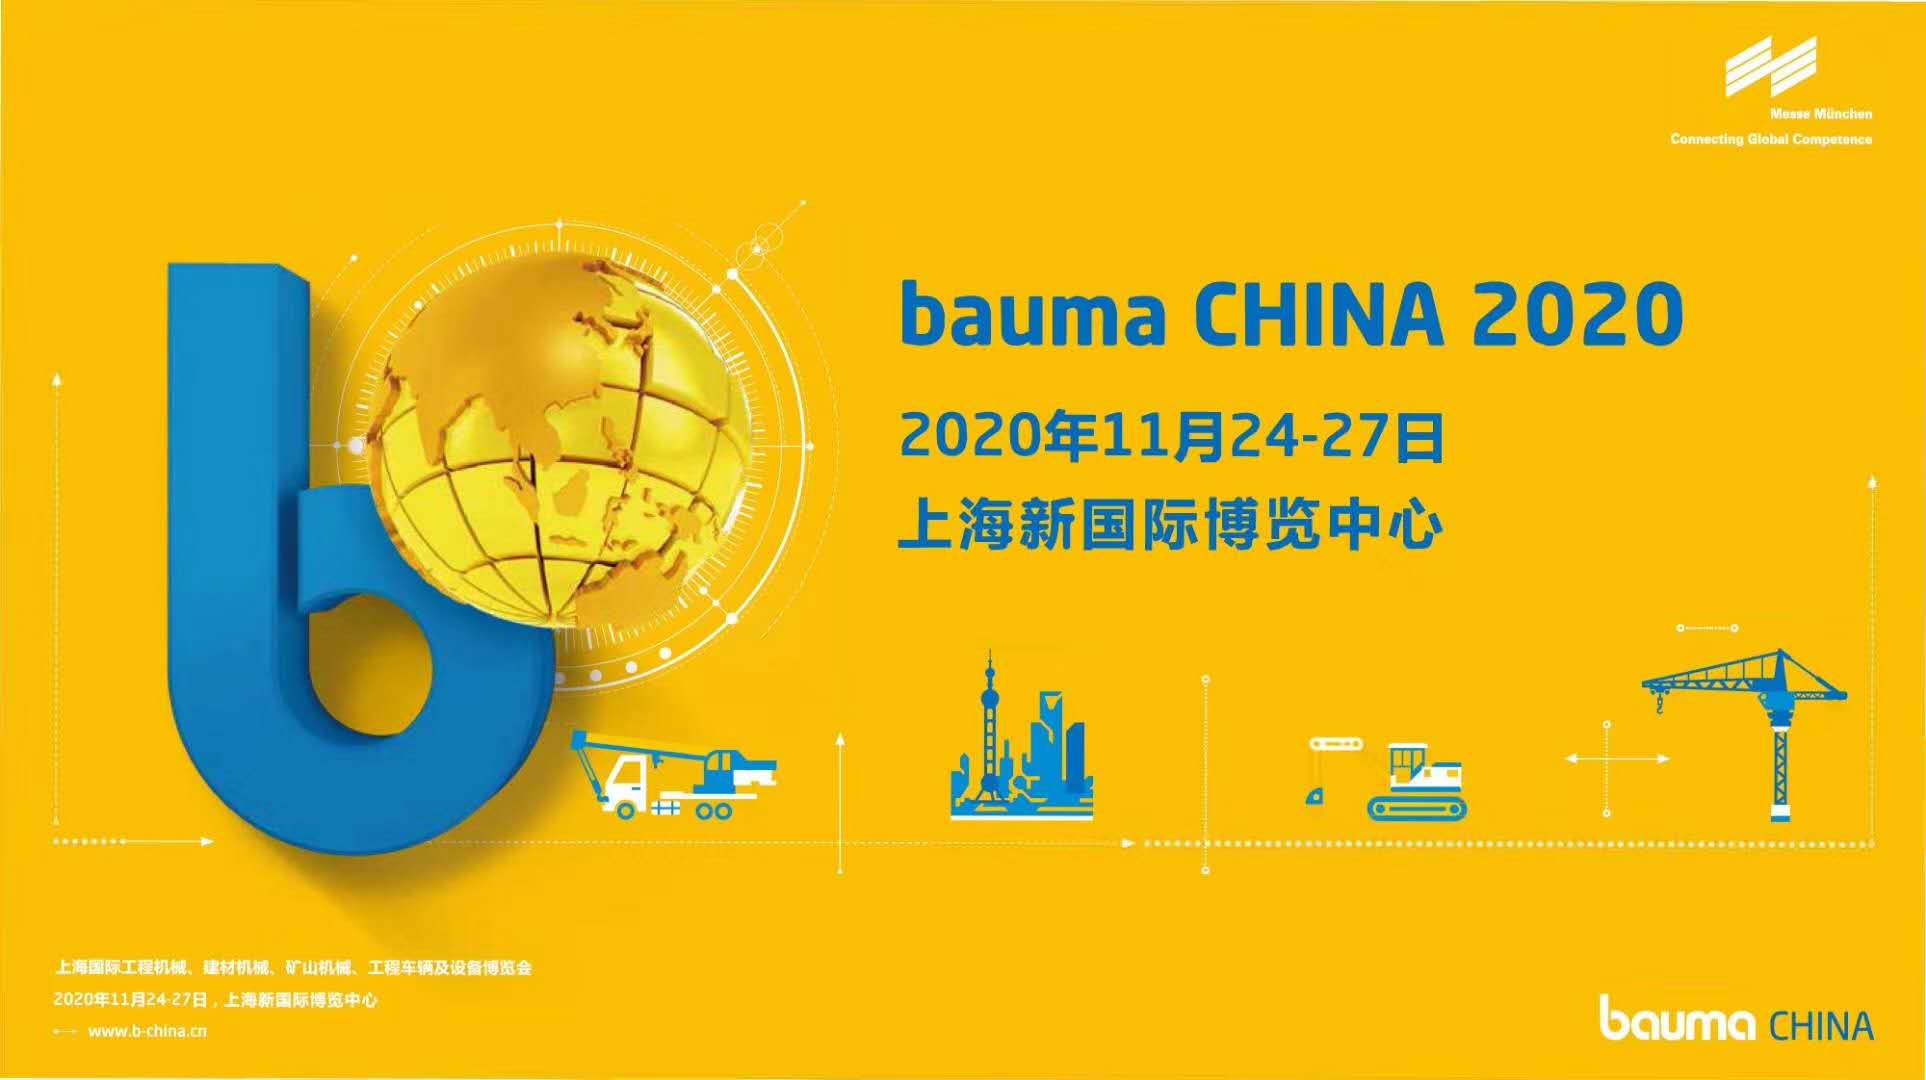 2020 bauma CHINA 